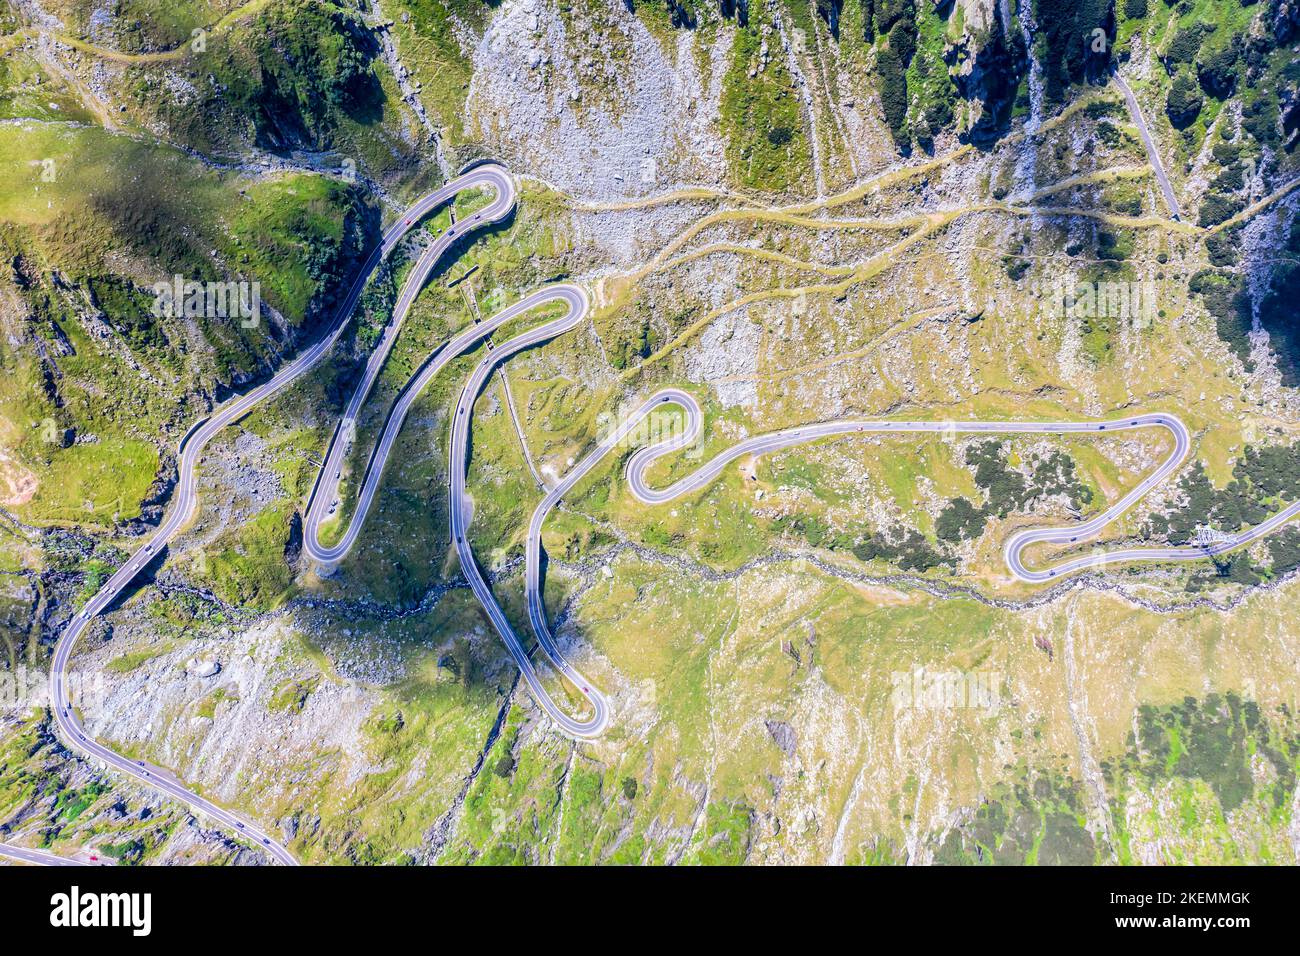 Vue aérienne de la route transfagarasan en Roumanie, le point de repère le plus important, la route de montagne sinueuse vue d'en haut. Banque D'Images